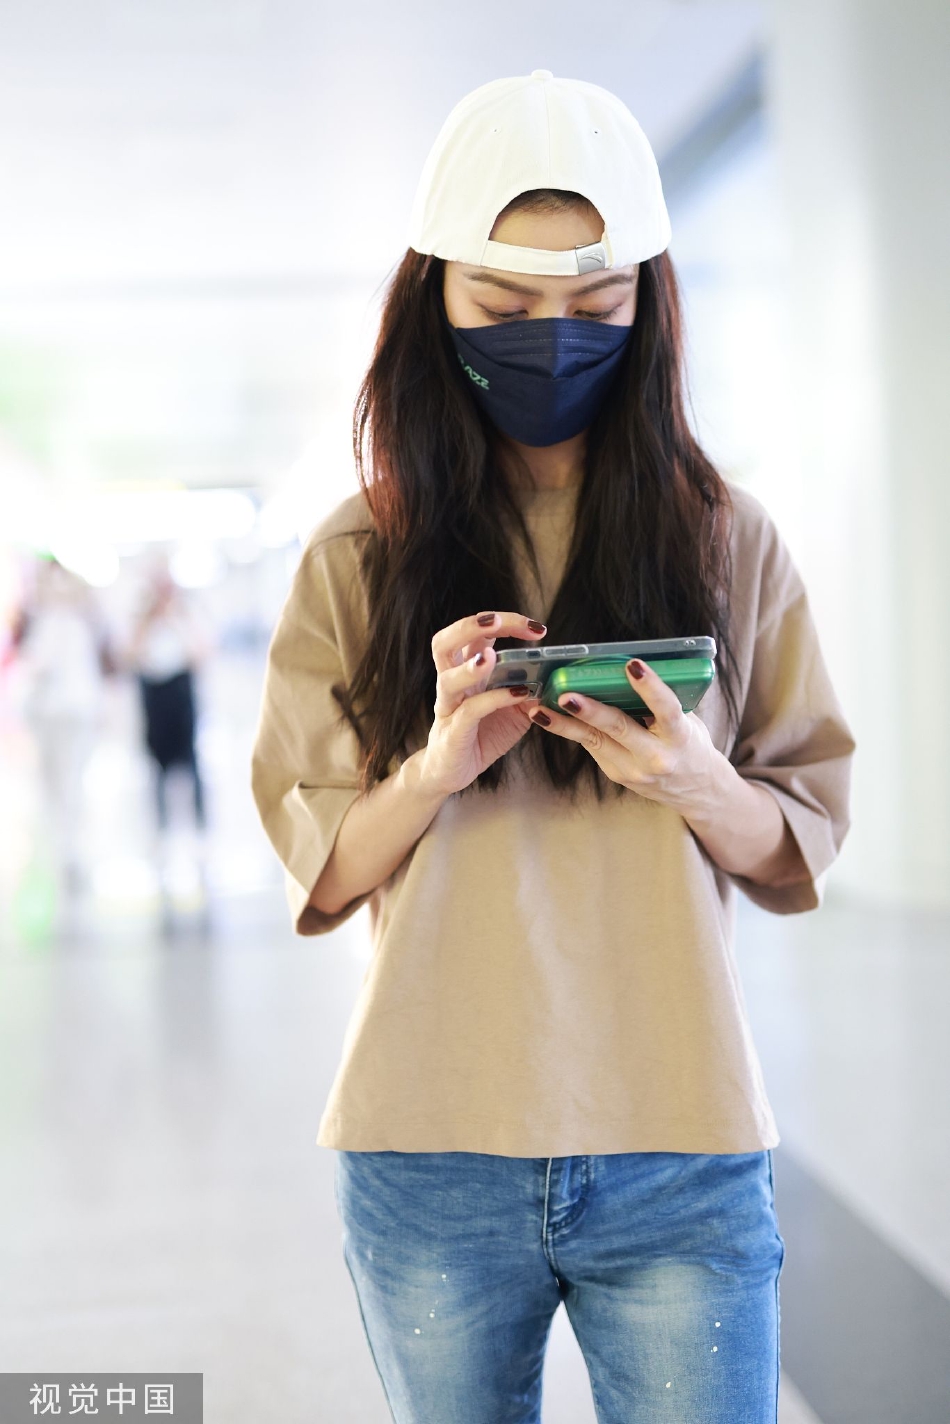 组图:薛凯琪反戴鸭舌帽现身机场 穿搭休闲全程低头玩手机